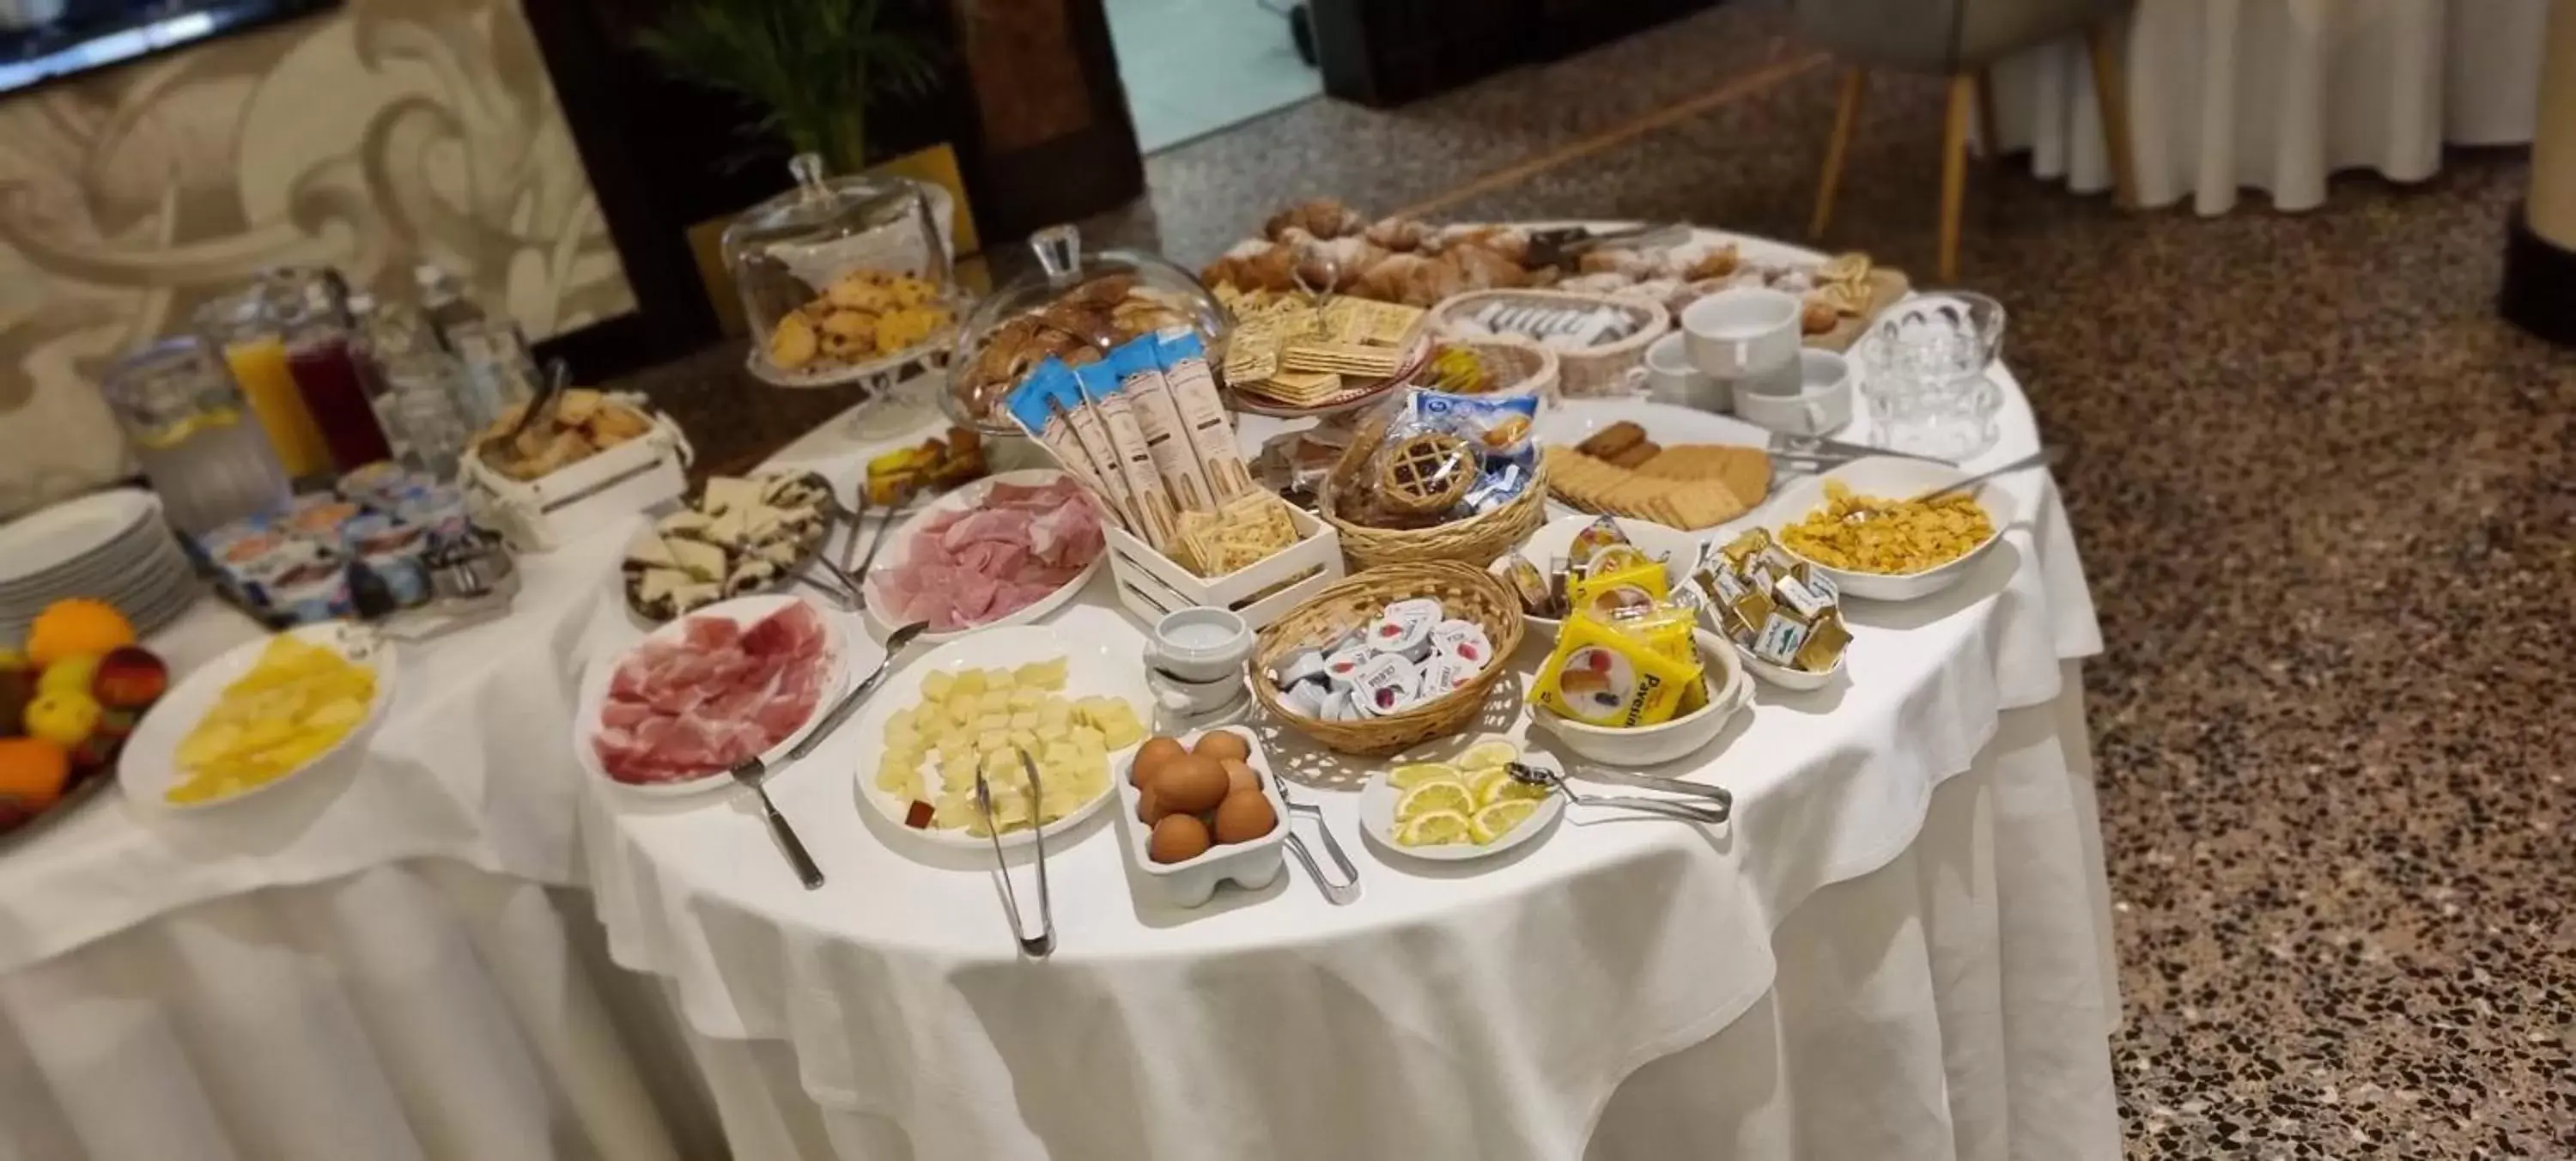 Buffet breakfast in Villa Regina Margherita